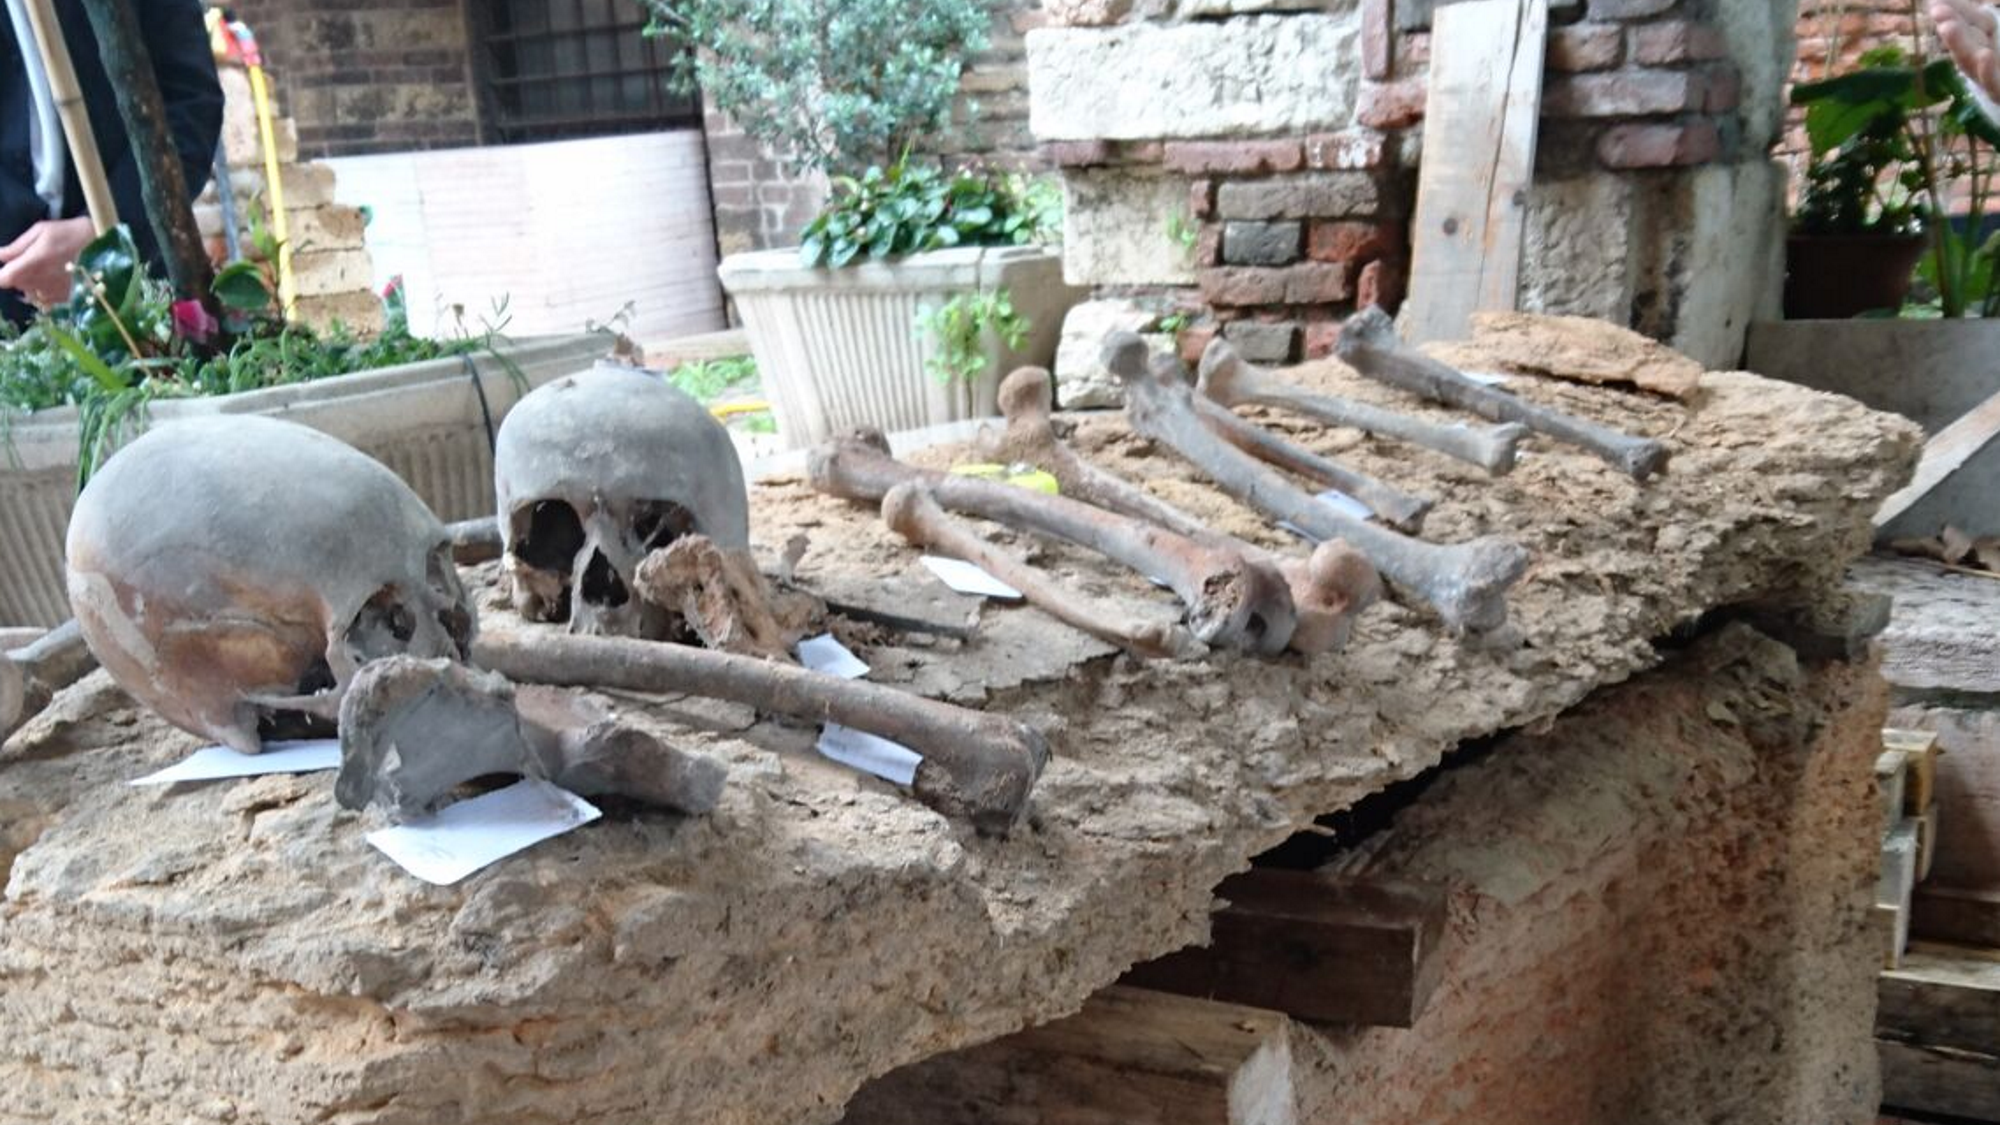 En el sarcófago encontrado en Verona, la cruz de los templarios fue tallada. Foto de Giampero Bagni.